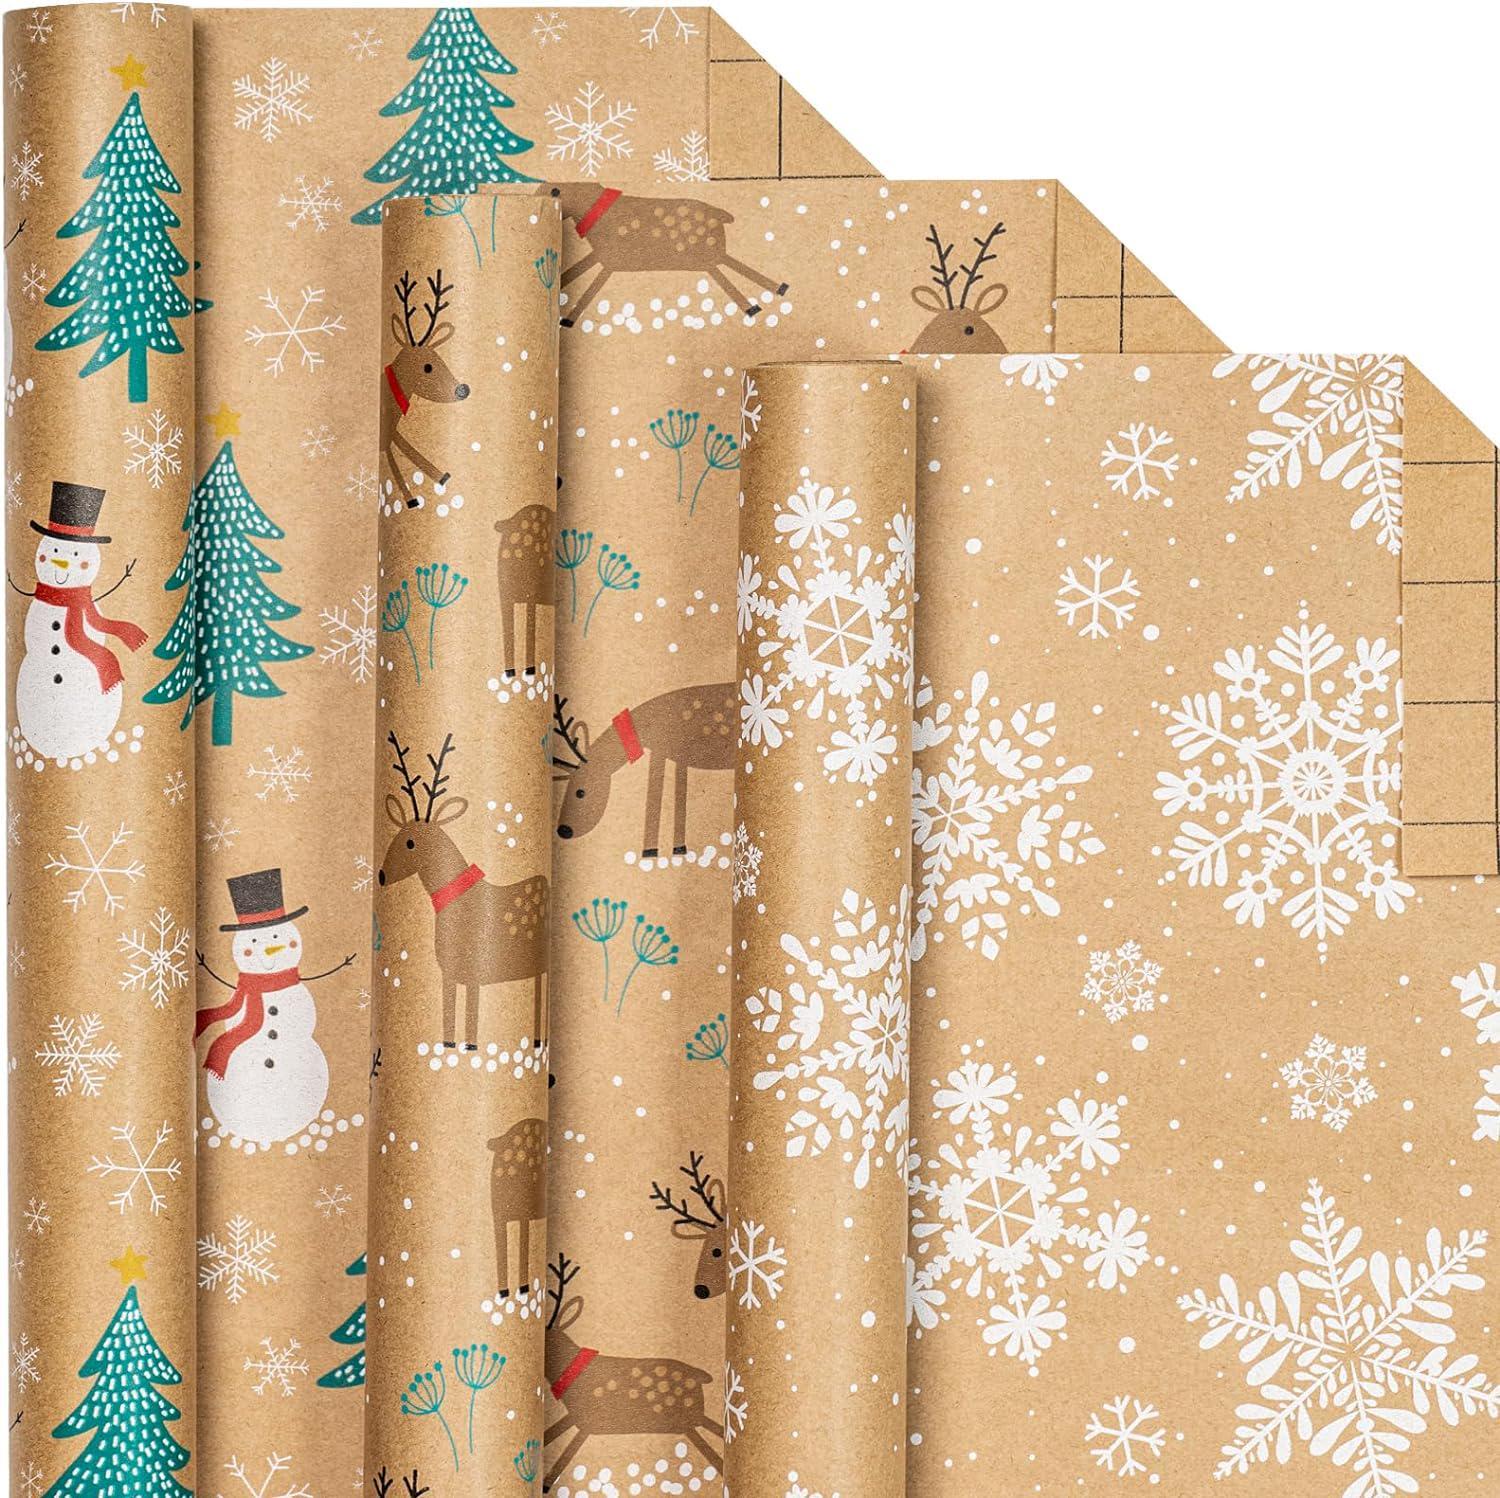 LeZakaa Reversible Christmas Wrapping Paper - Jumbo Roll